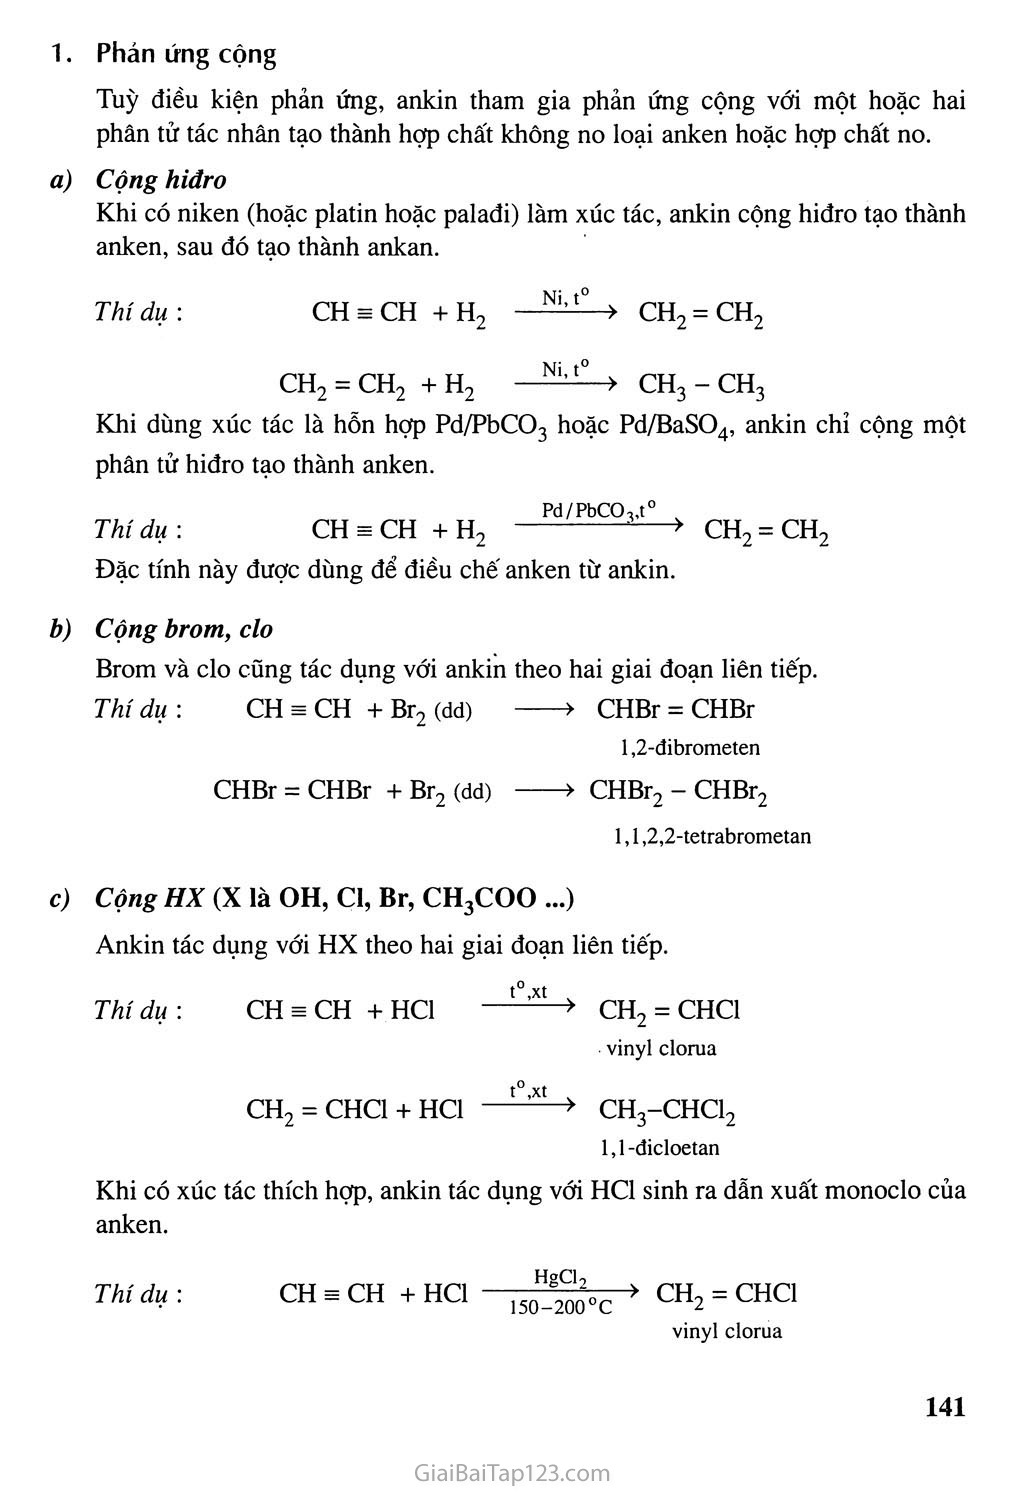 ANKIN Tính chất vật lý Tính chất hóa học Cách điều chế và Ứng dụng của  ANKIN  Hóa 11 bài 32